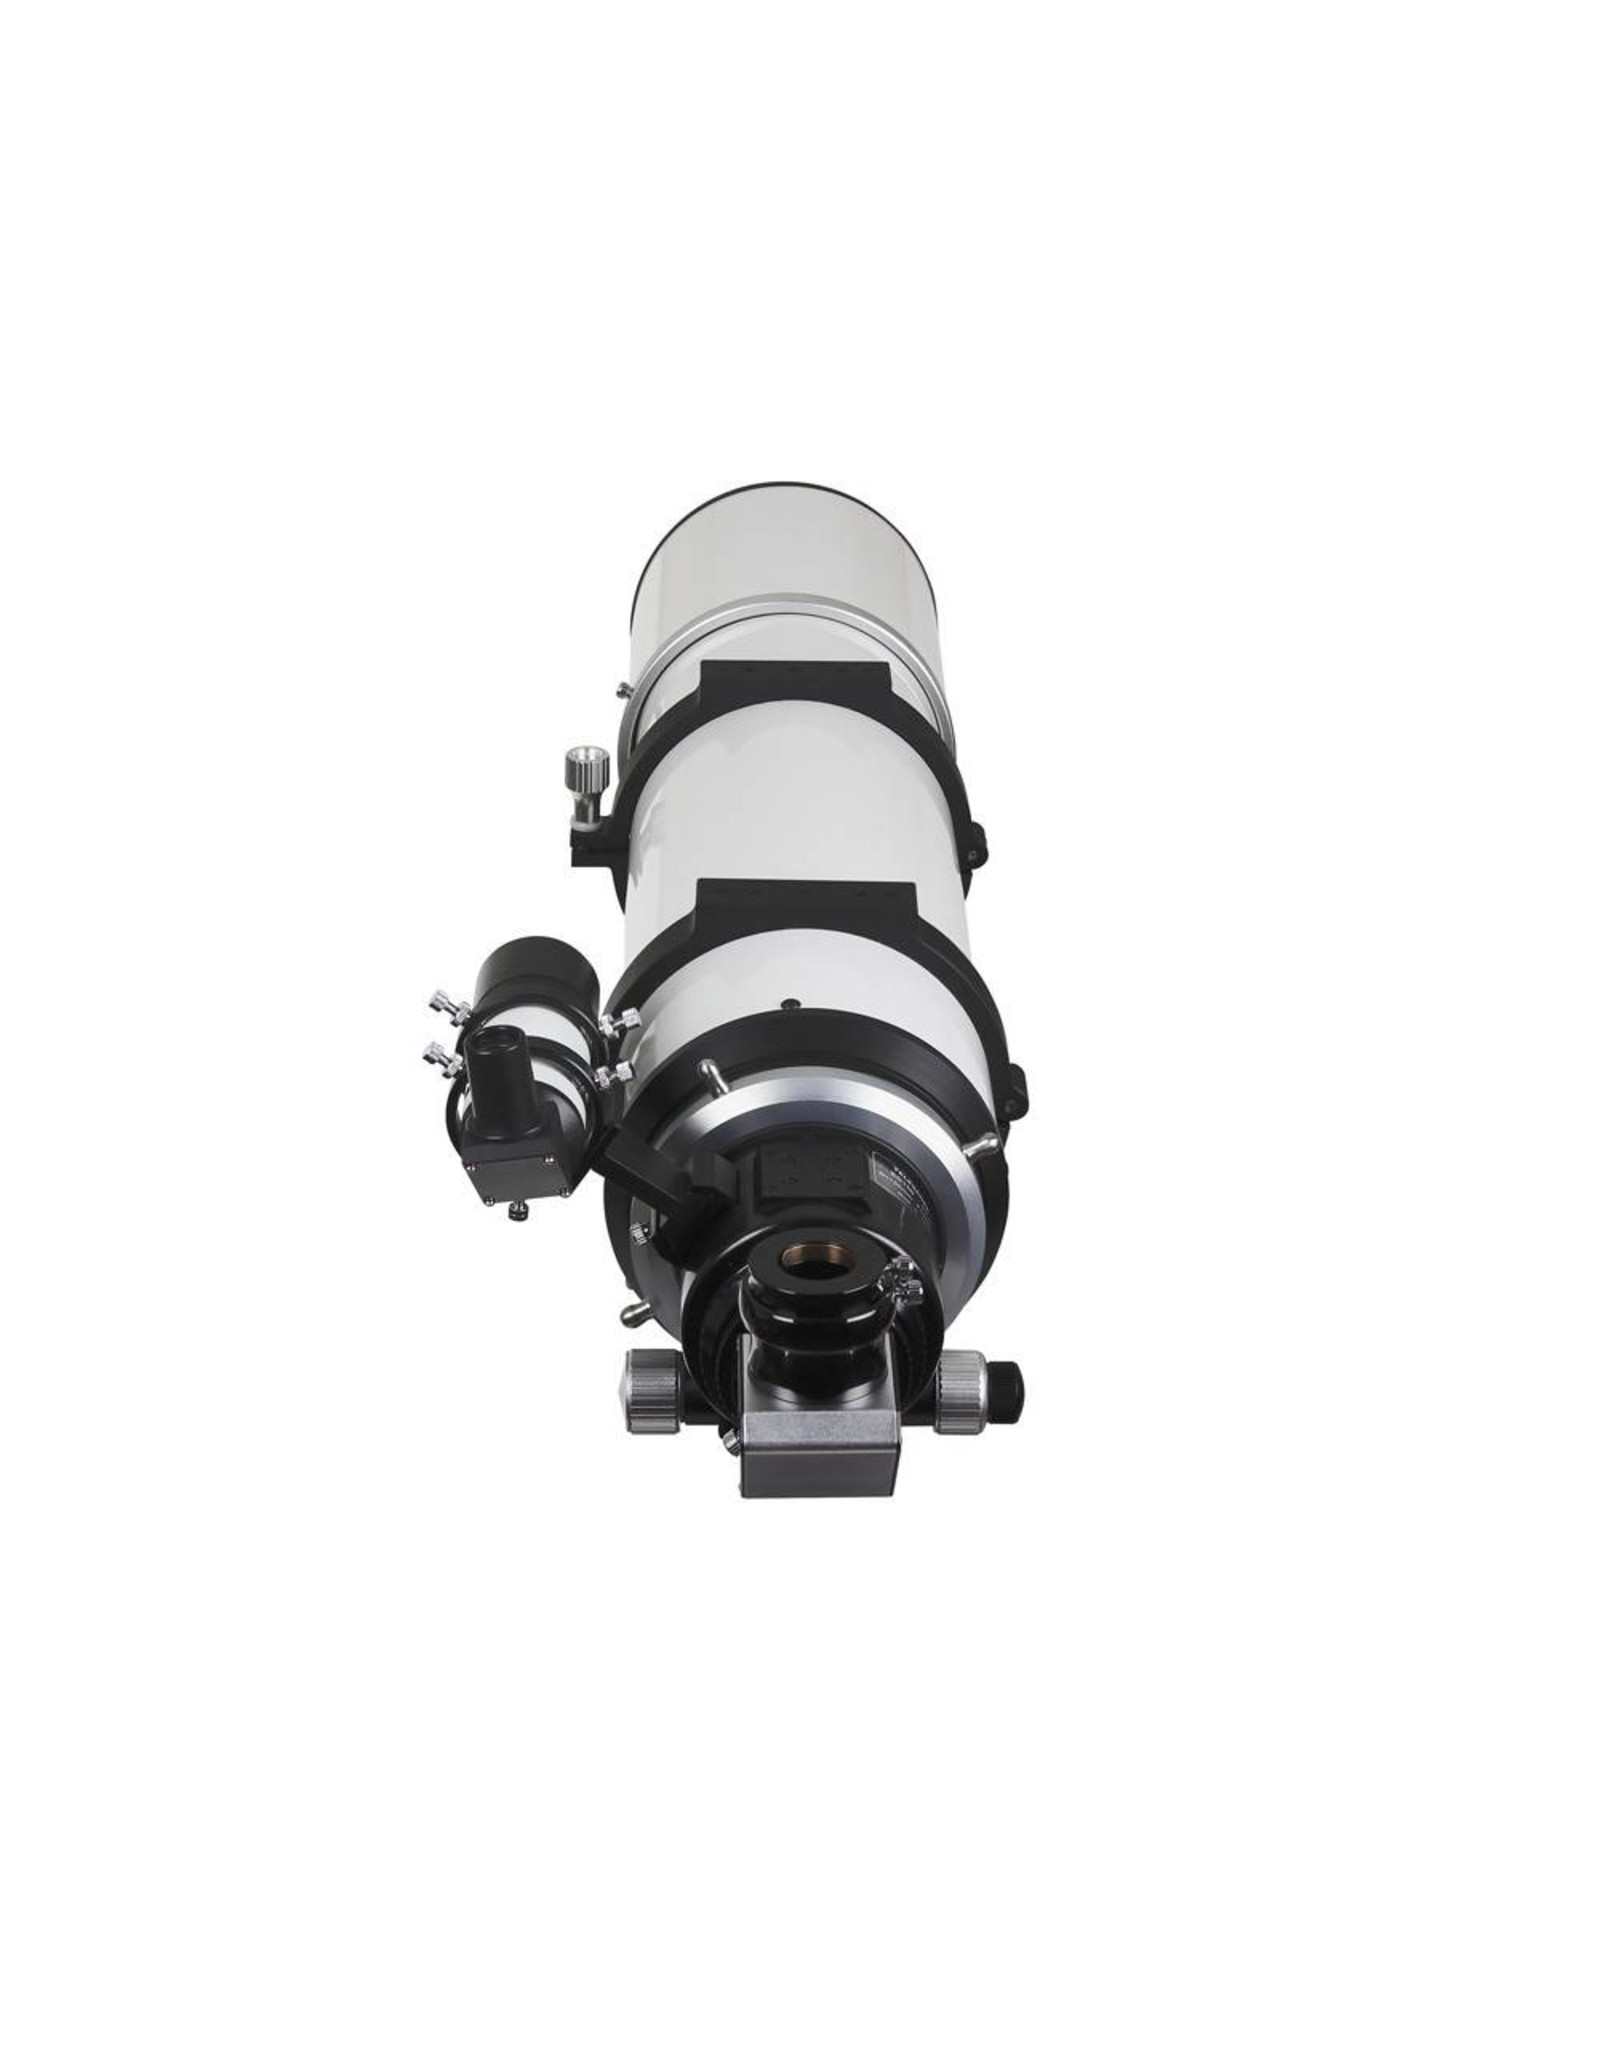 Sky-Watcher Sky-Watcher Esprit 150mm ED Triplet APO Refractor